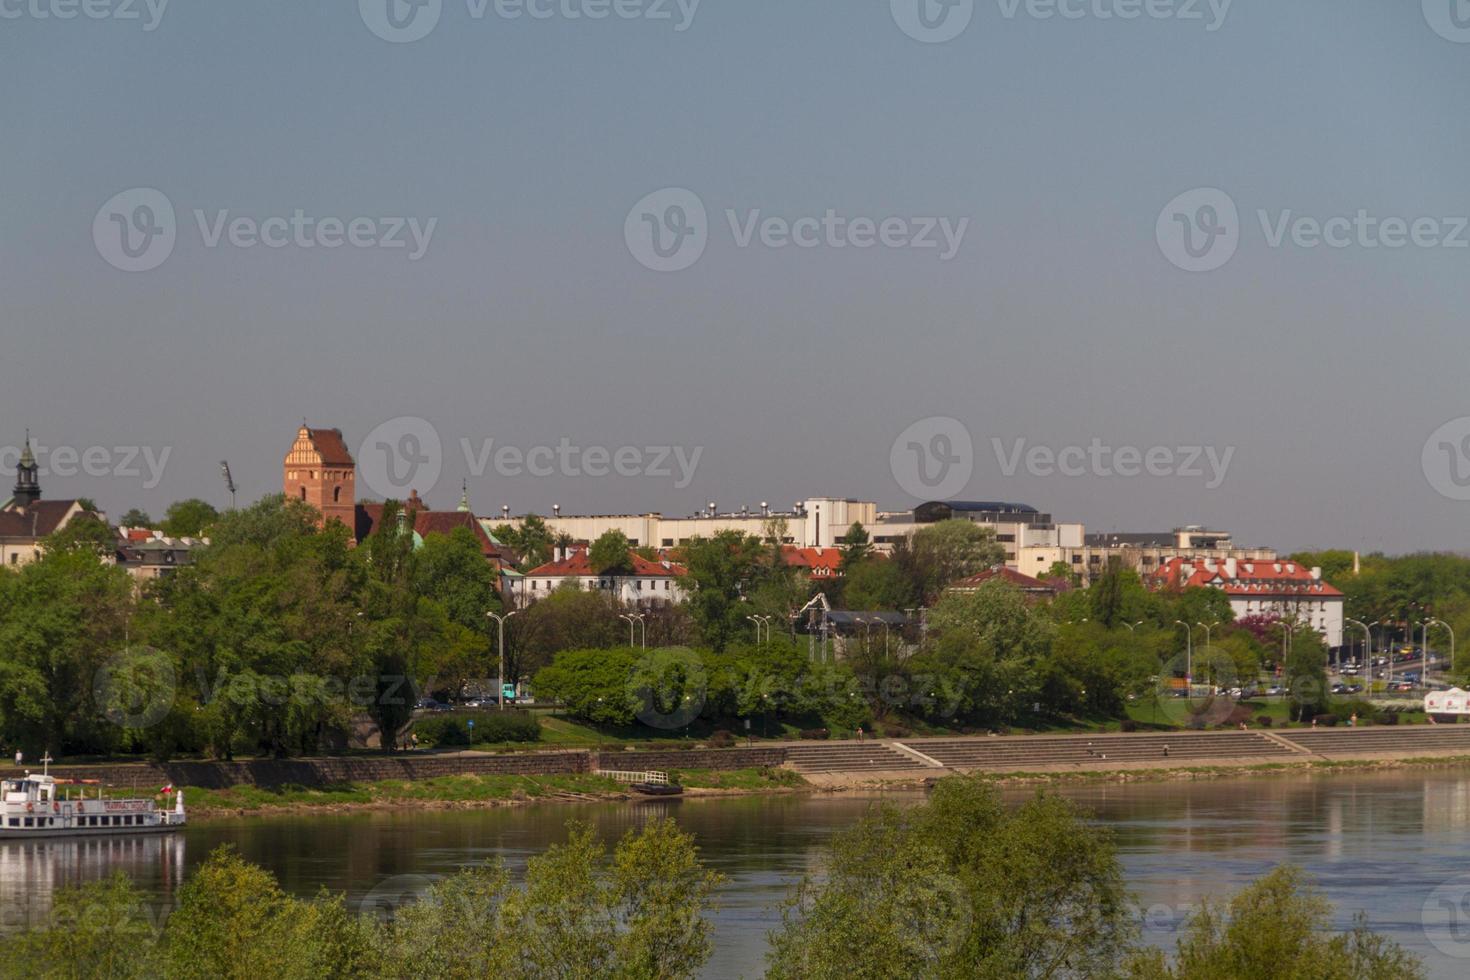 cidade velha pelo cenário pitoresco do rio vistula na cidade de varsóvia, polônia foto